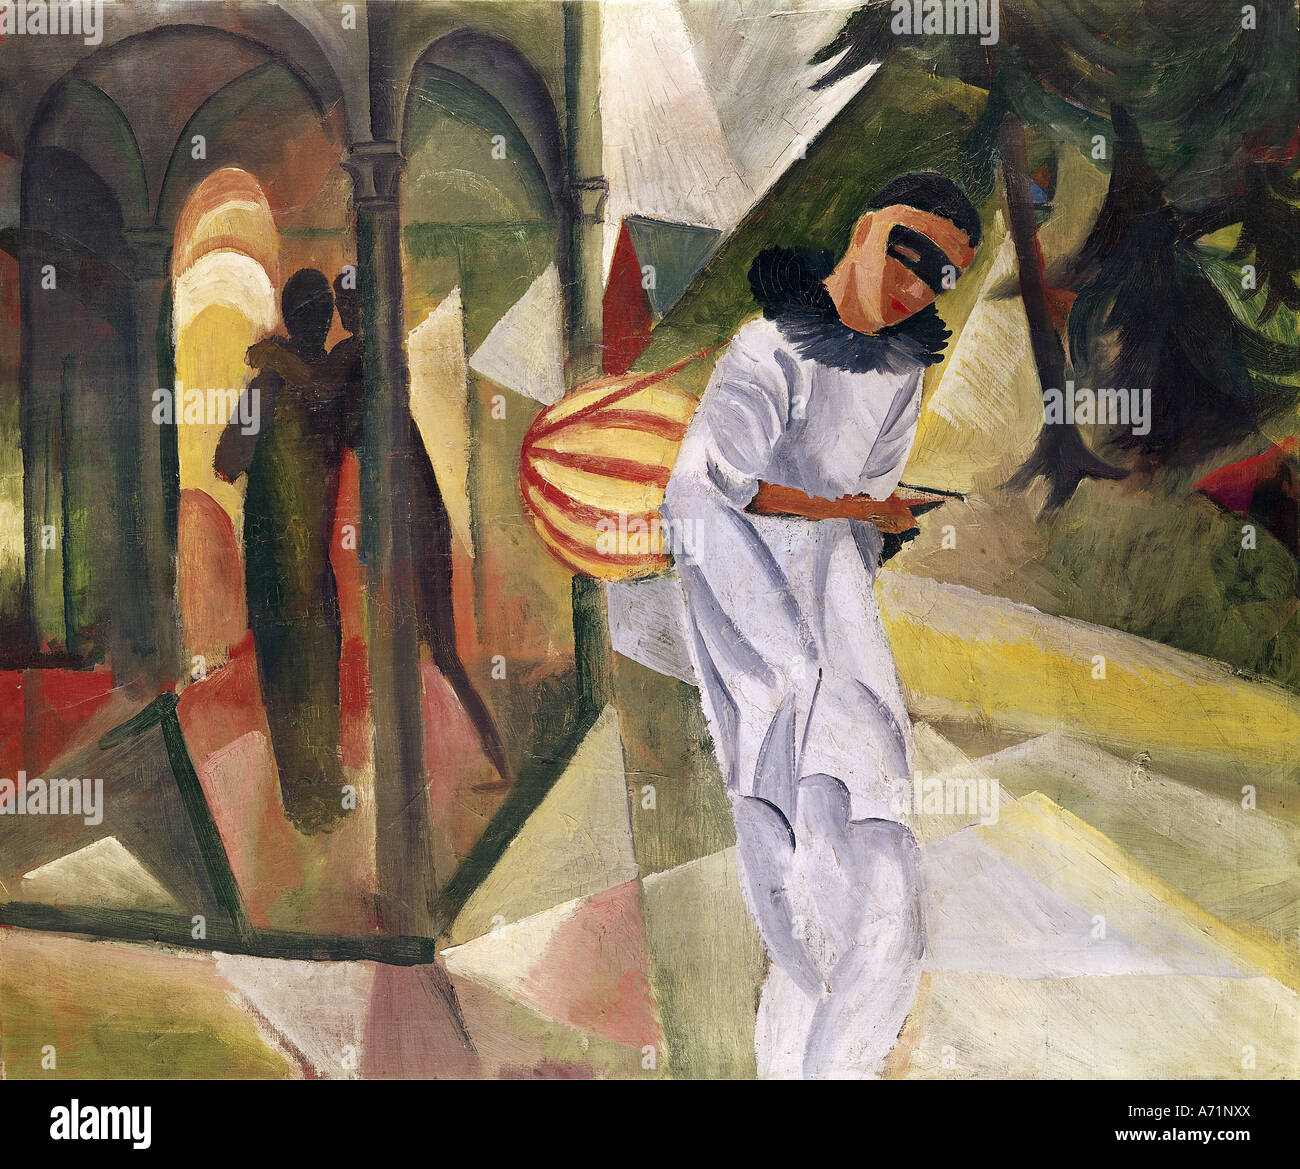 'Fine Arts, Macke, August, (1887 - 1914), peinture, 'Pierrot', 1913, huile sur toile, 75 cm x 90 cm, hall des arts, Bielefeld, hi Banque D'Images